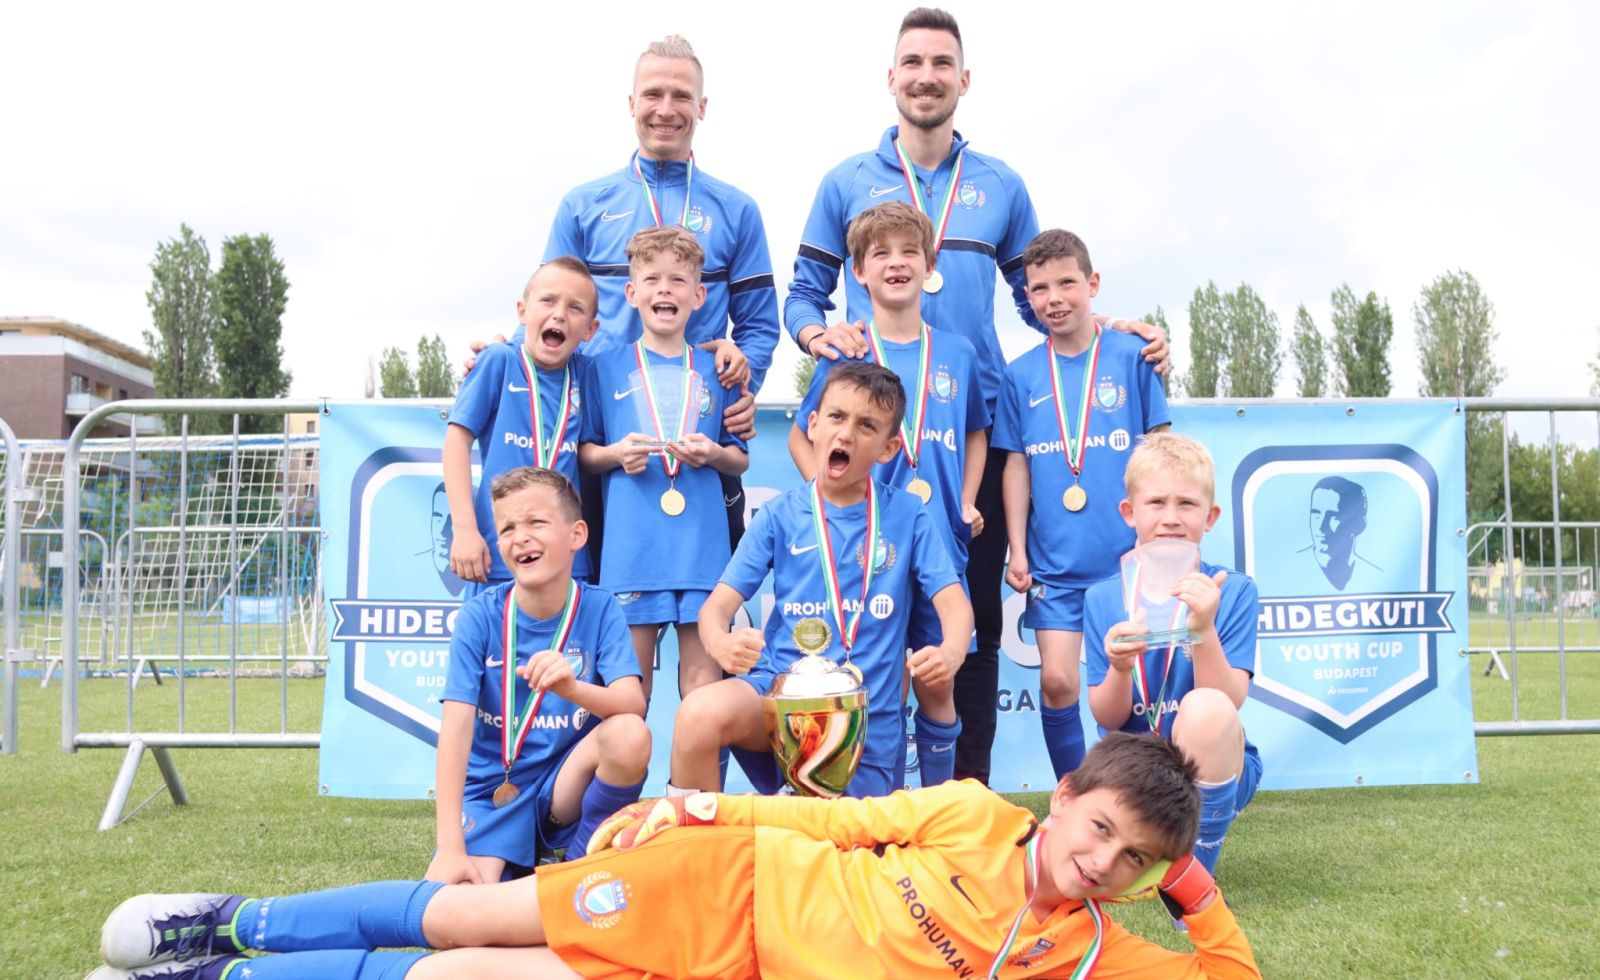 Az MTK Budapest győzelmével ért véget a Hidegkuti Youth Cup